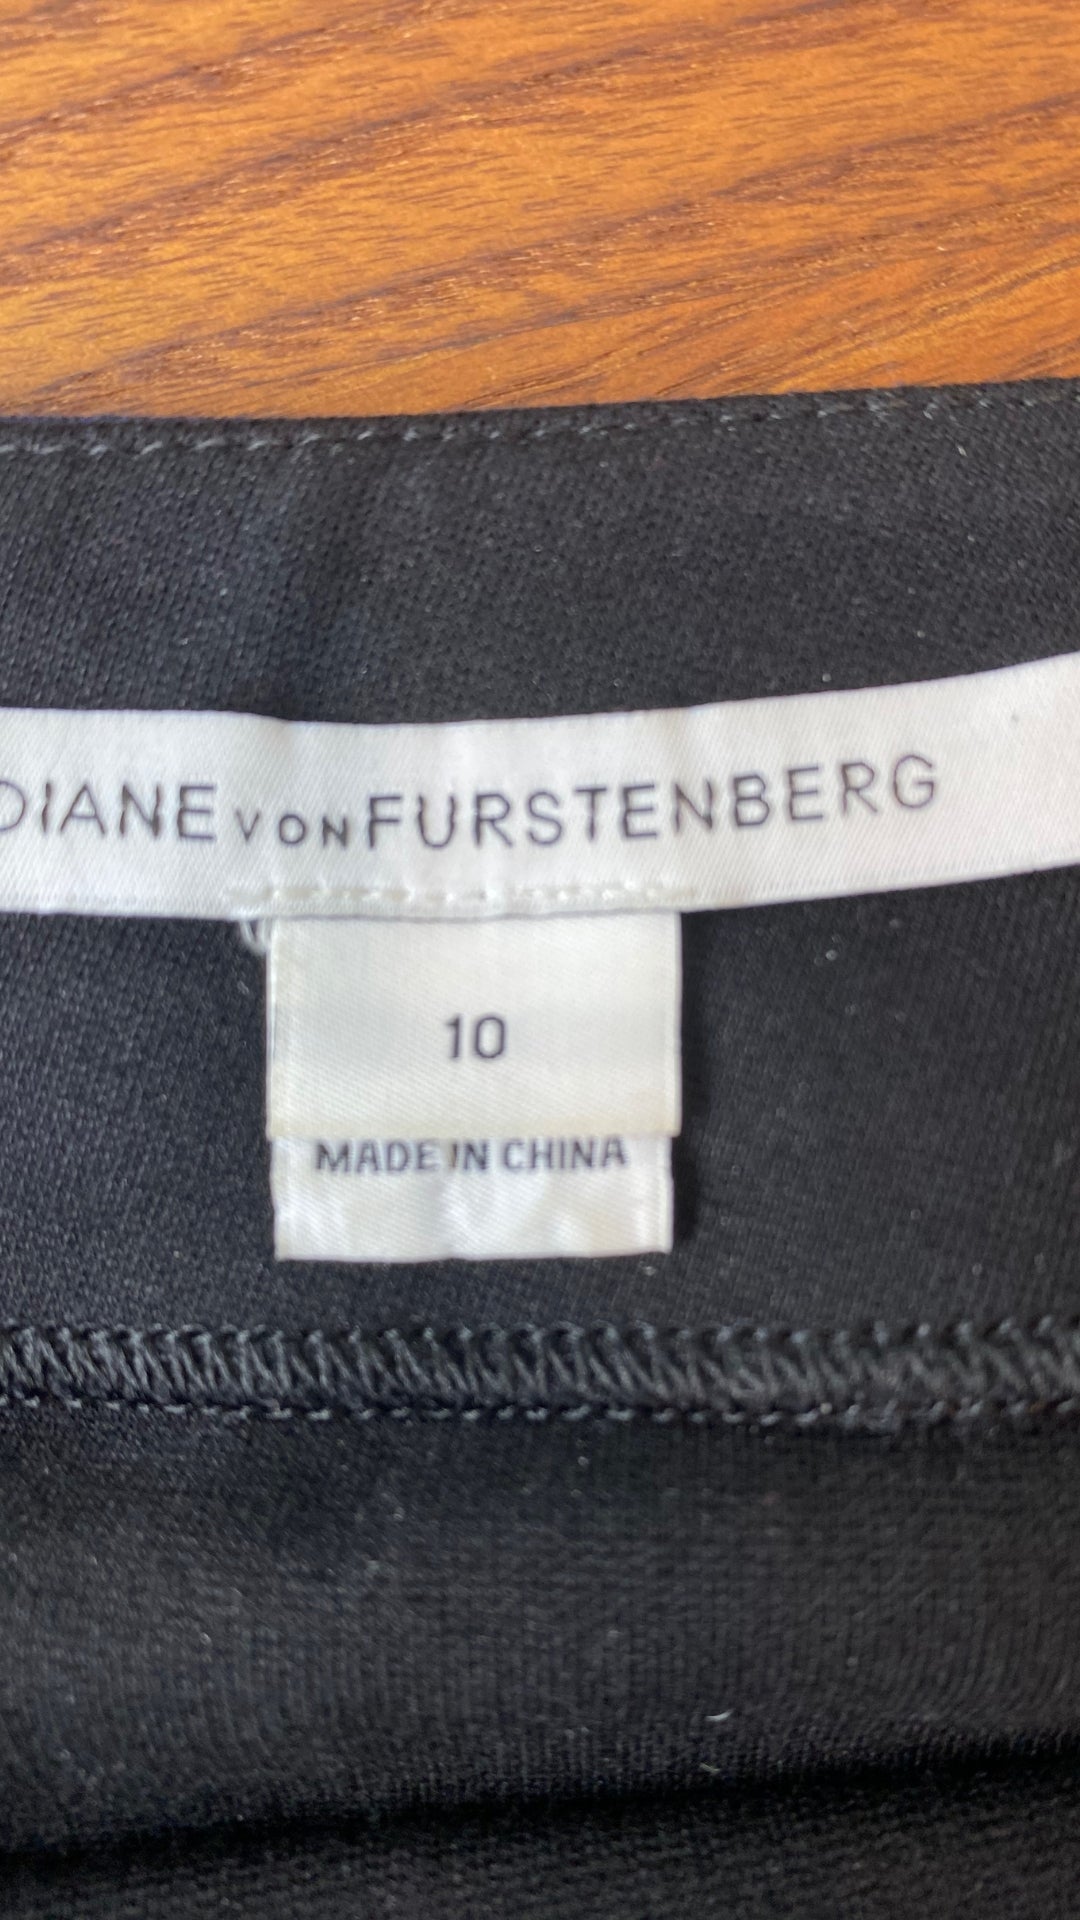 Jupe noire encadré marine extensible Diane von Furstenberg, taille 10. Vue de l'étiquette de marque et taille.